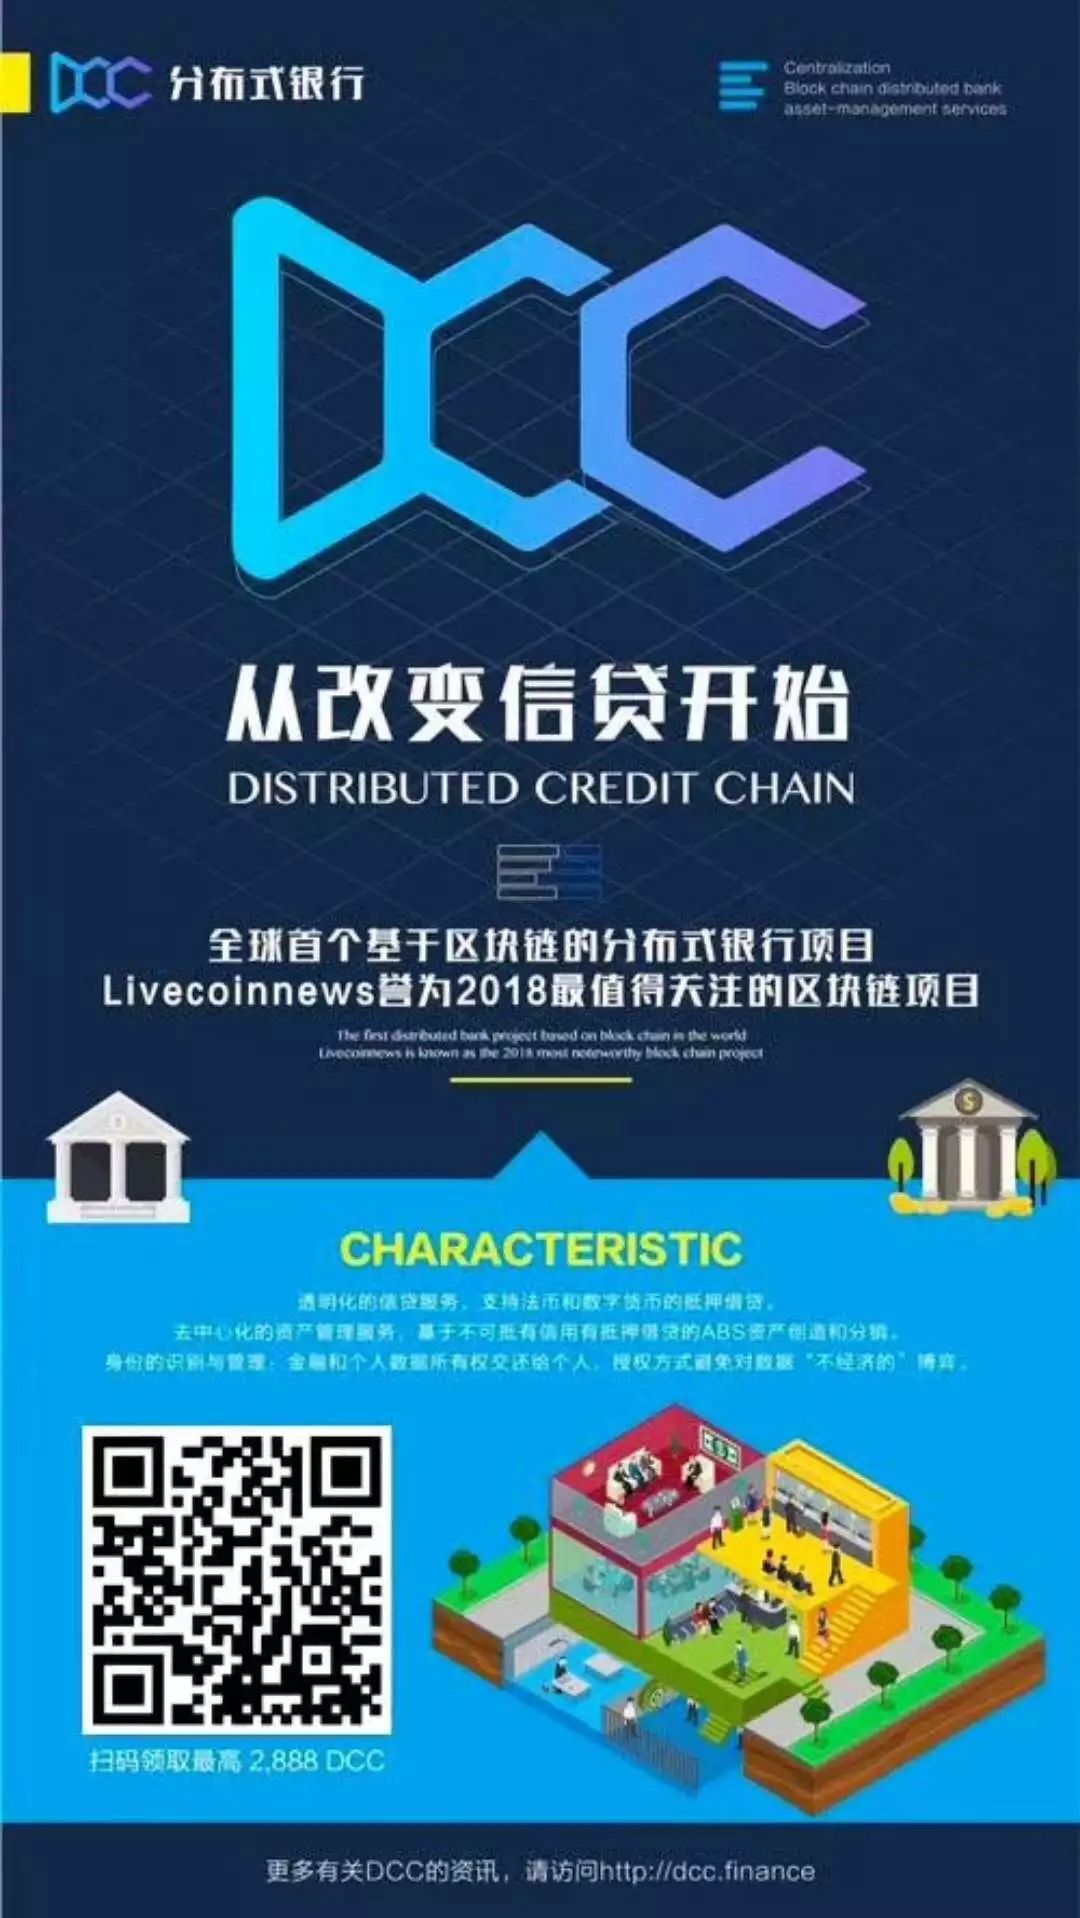 中国邮政贷款app_usdt贷款app_信用卡贷款的app